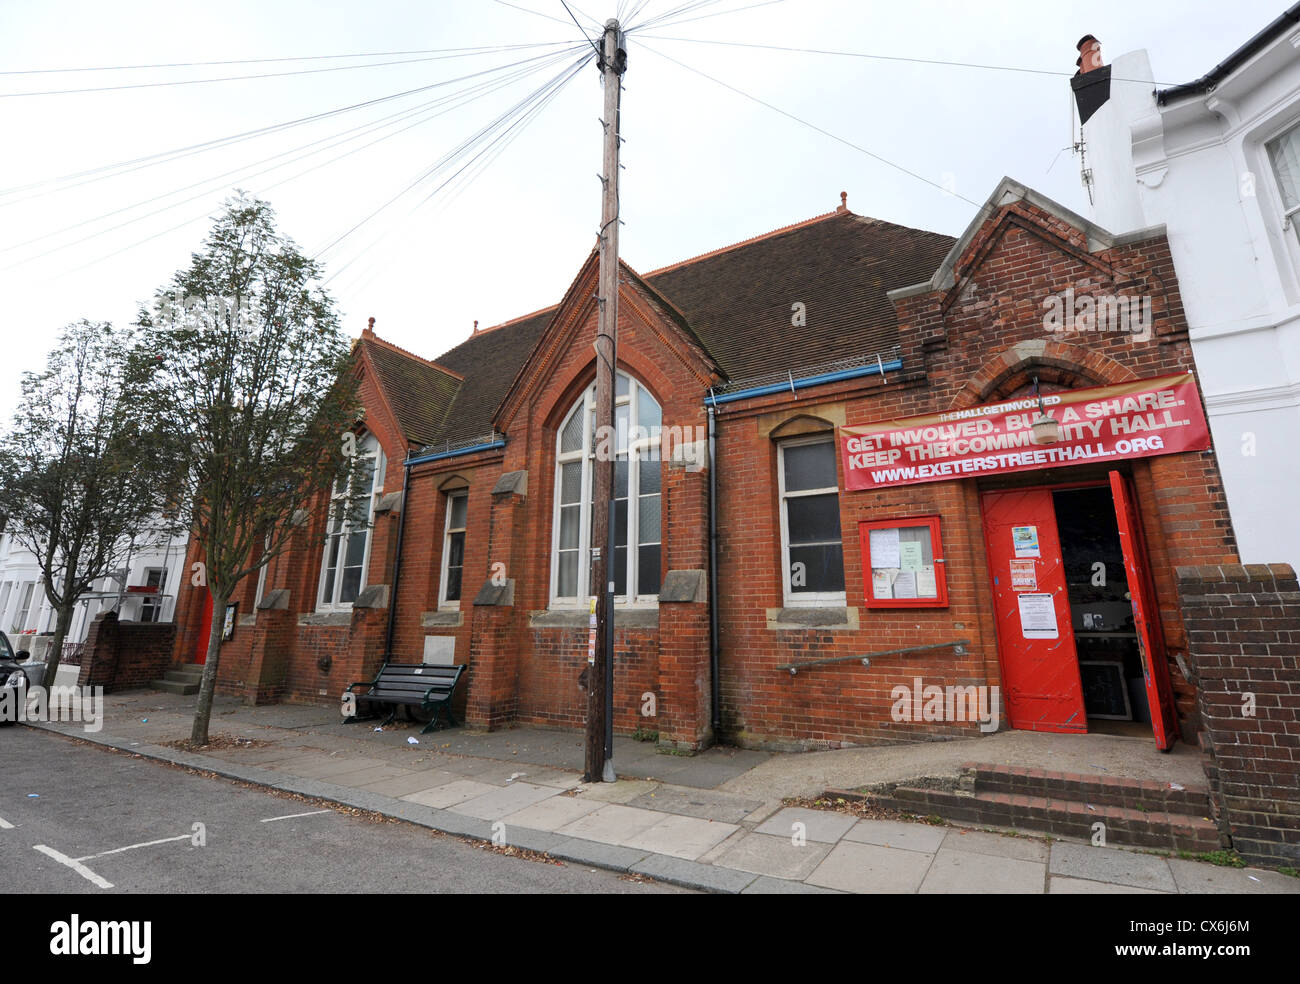 Les résidents locaux de la campagne THEHALLGETINVOLVED pour sauver le Hall de rue Exeter à Brighton offrent des actions pour la vente au Royaume-Uni Banque D'Images